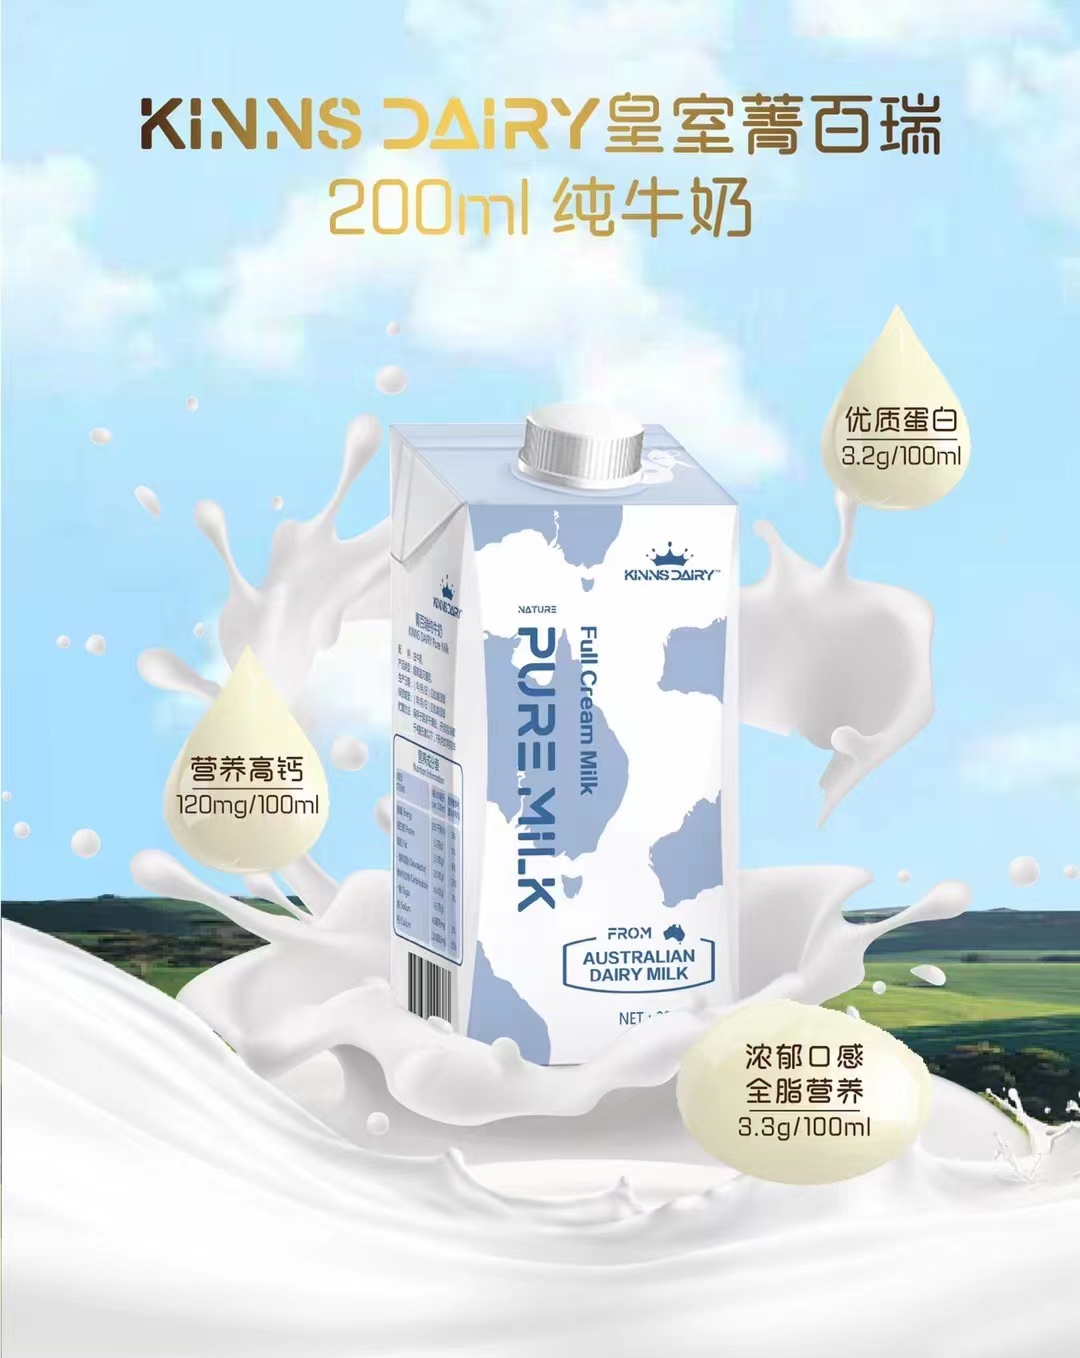 菁百瑞纯牛奶澳洲皇室KINNSDAIRY 200ml*24盒原装进口高钙常温奶-封面